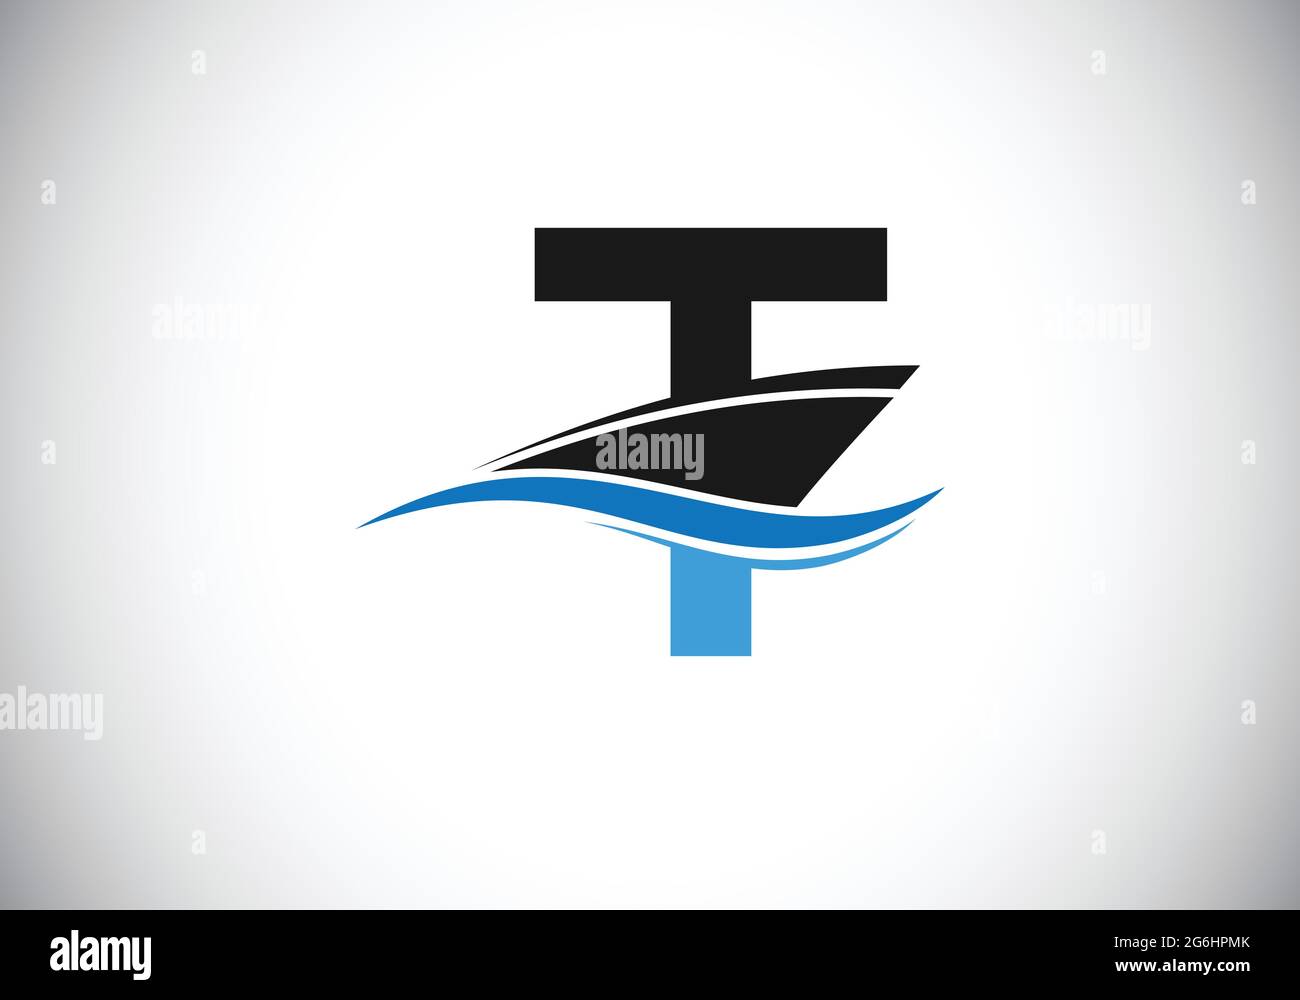 Lettre T majuscule avec le modèle de logo du navire, de la croisière ou du bateau, Illustration de Vecteur